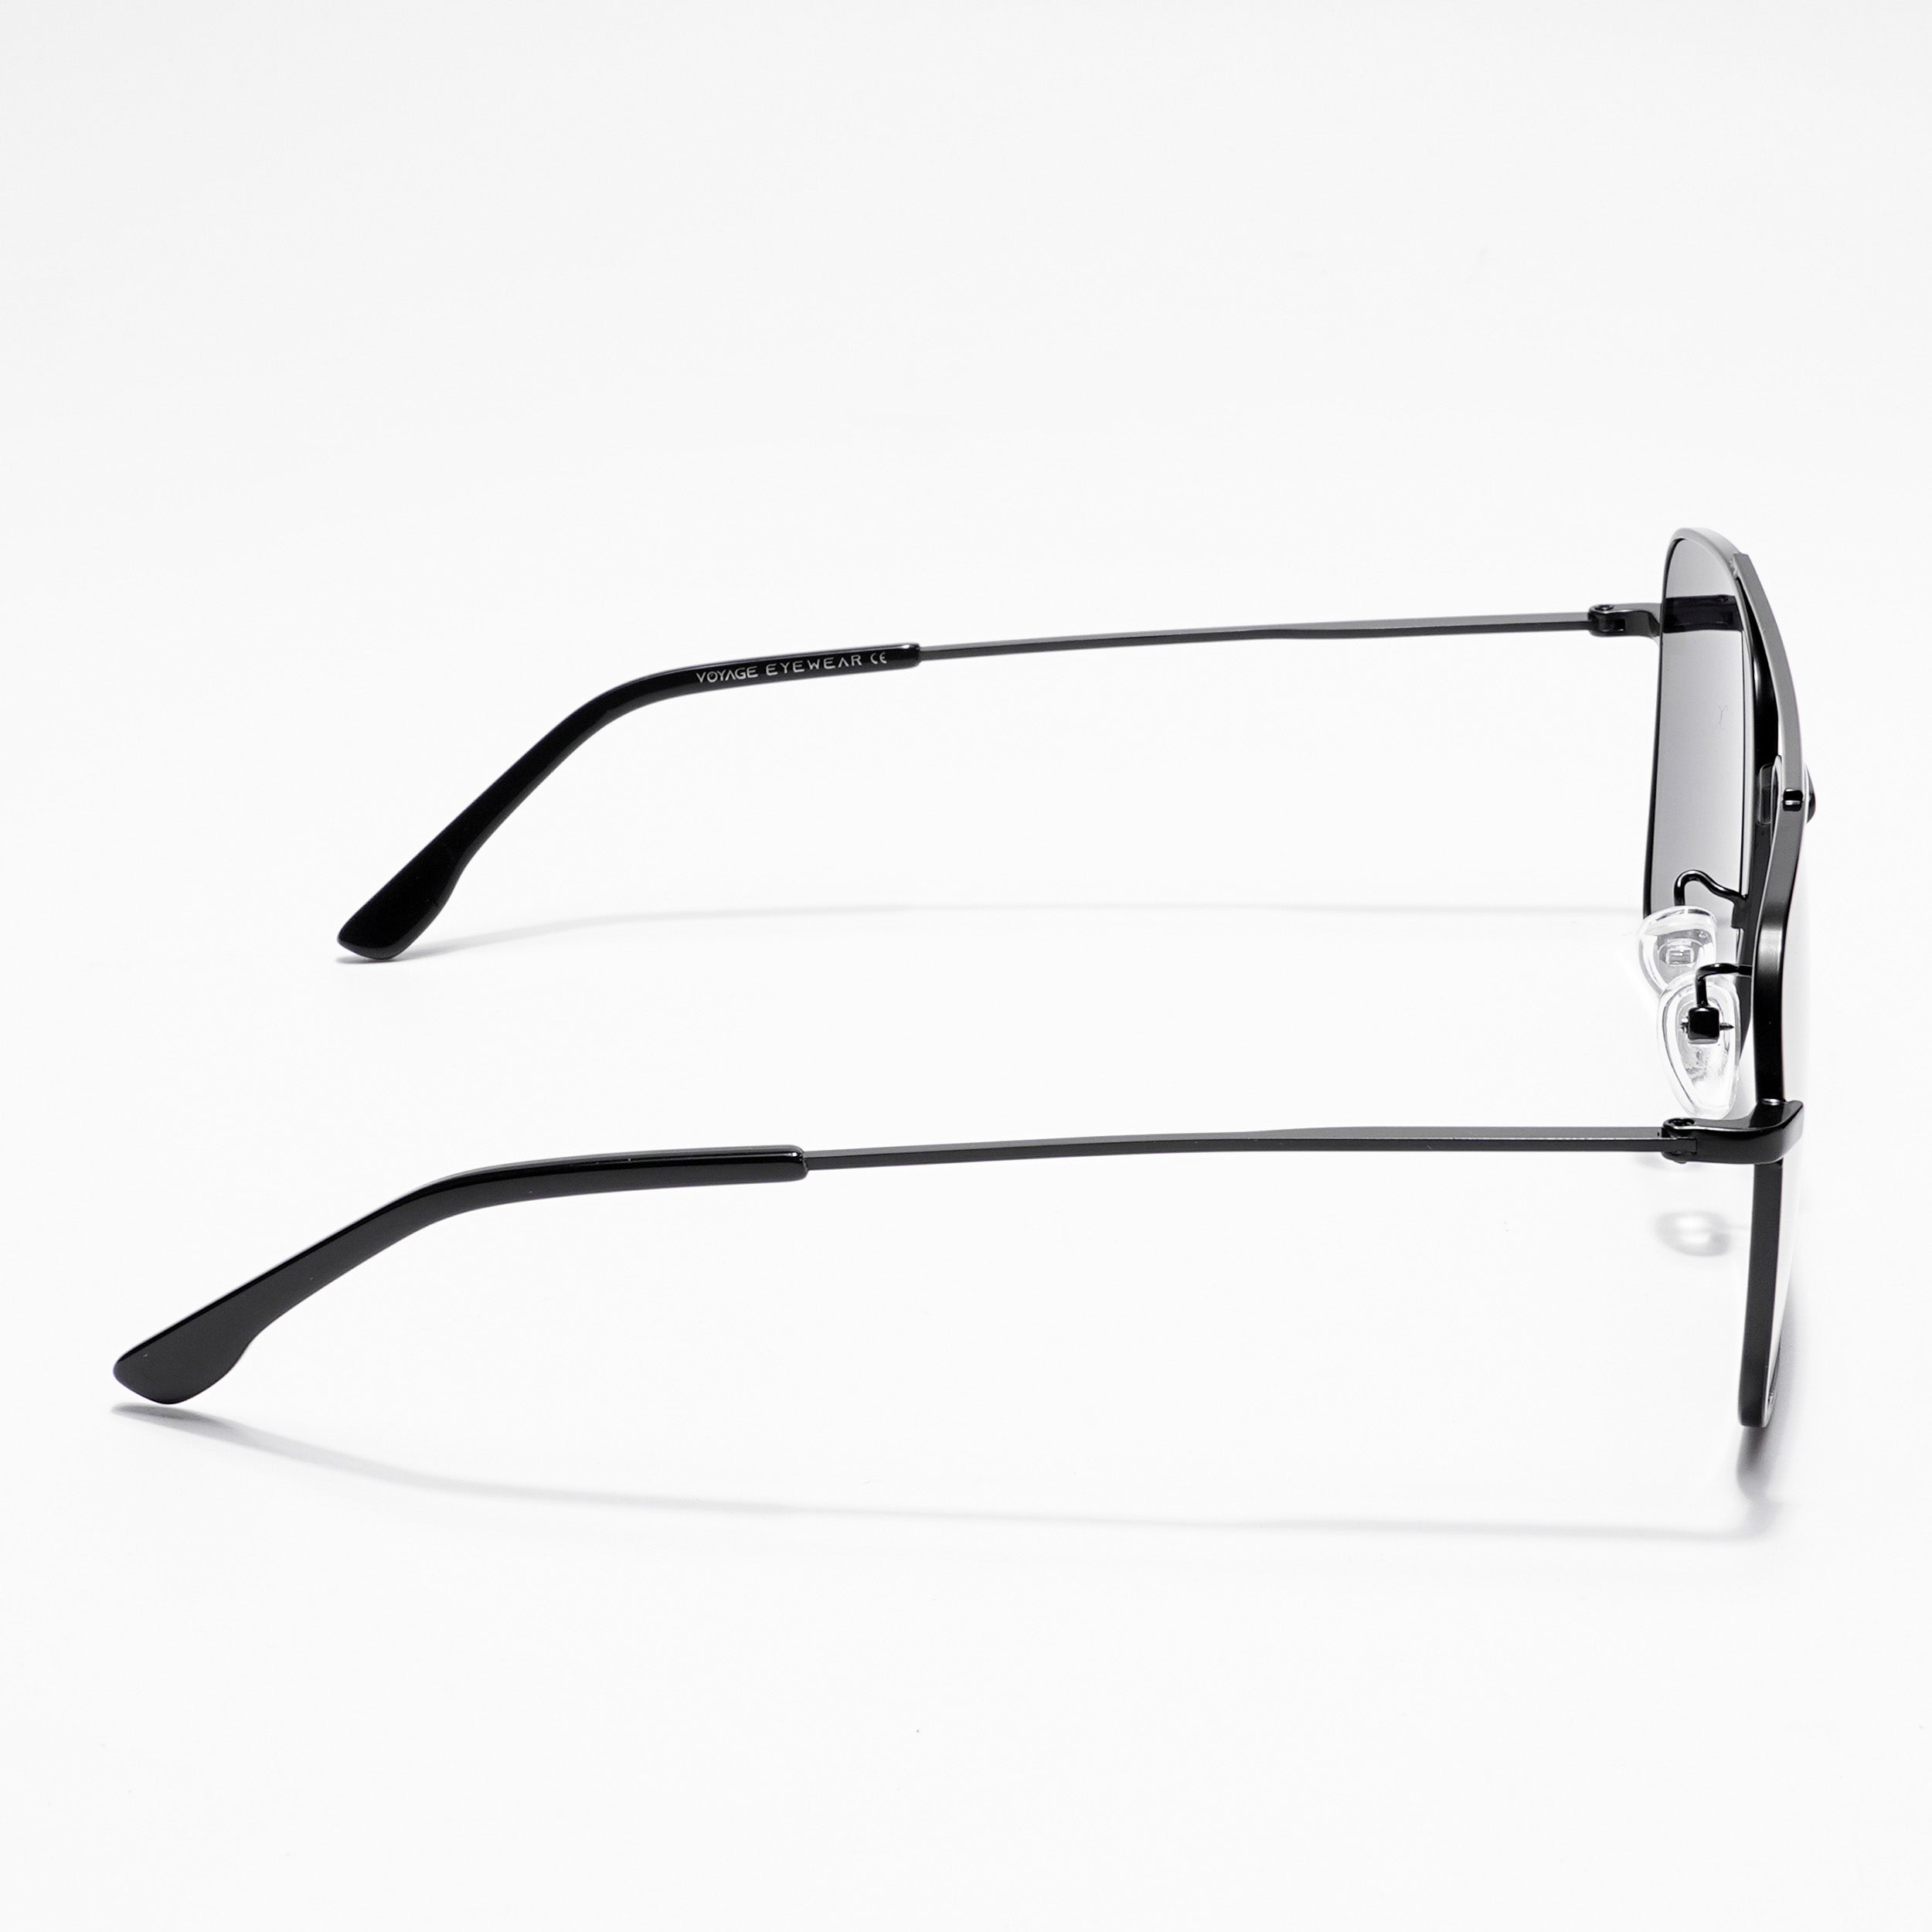 Voyage Aviator Sunglasses for Men & Women (Black Lens | Black Frame - MG5180)